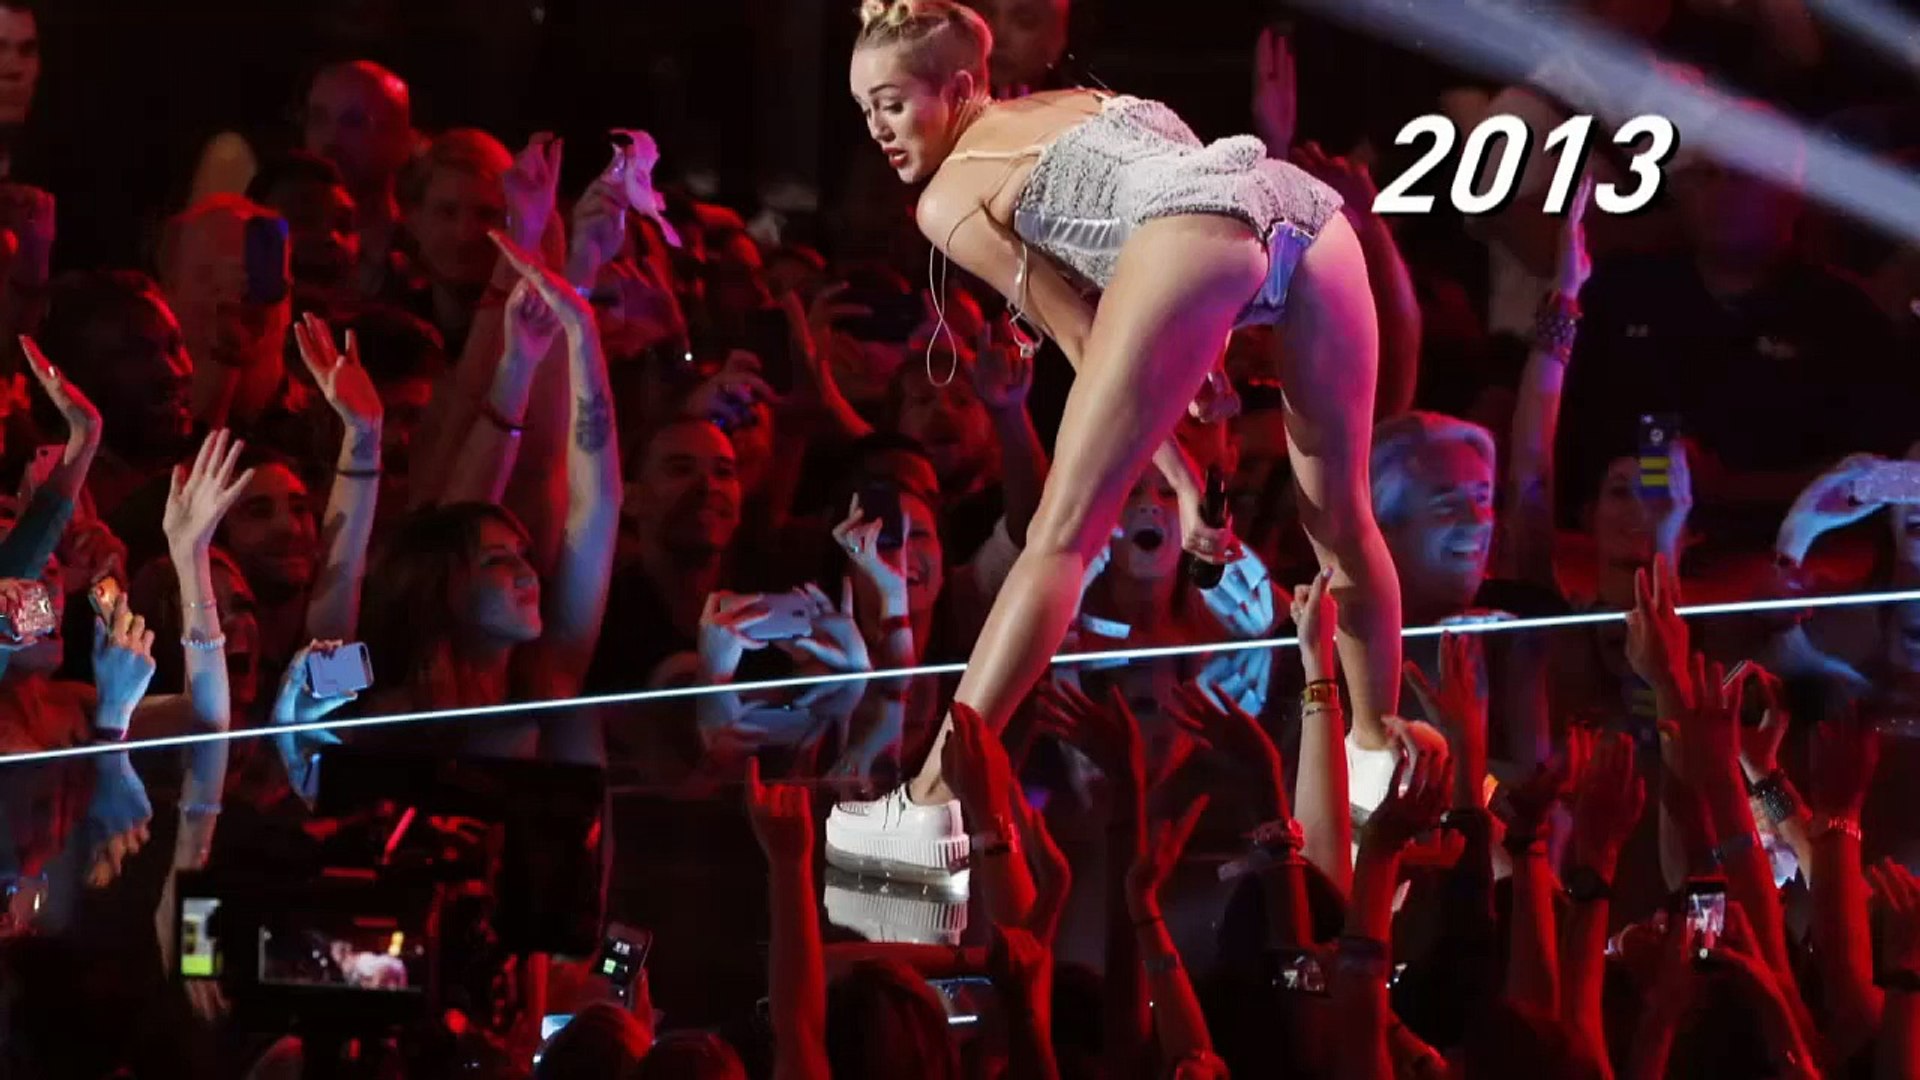 VMAs 2015: All the drama in 90 seconds